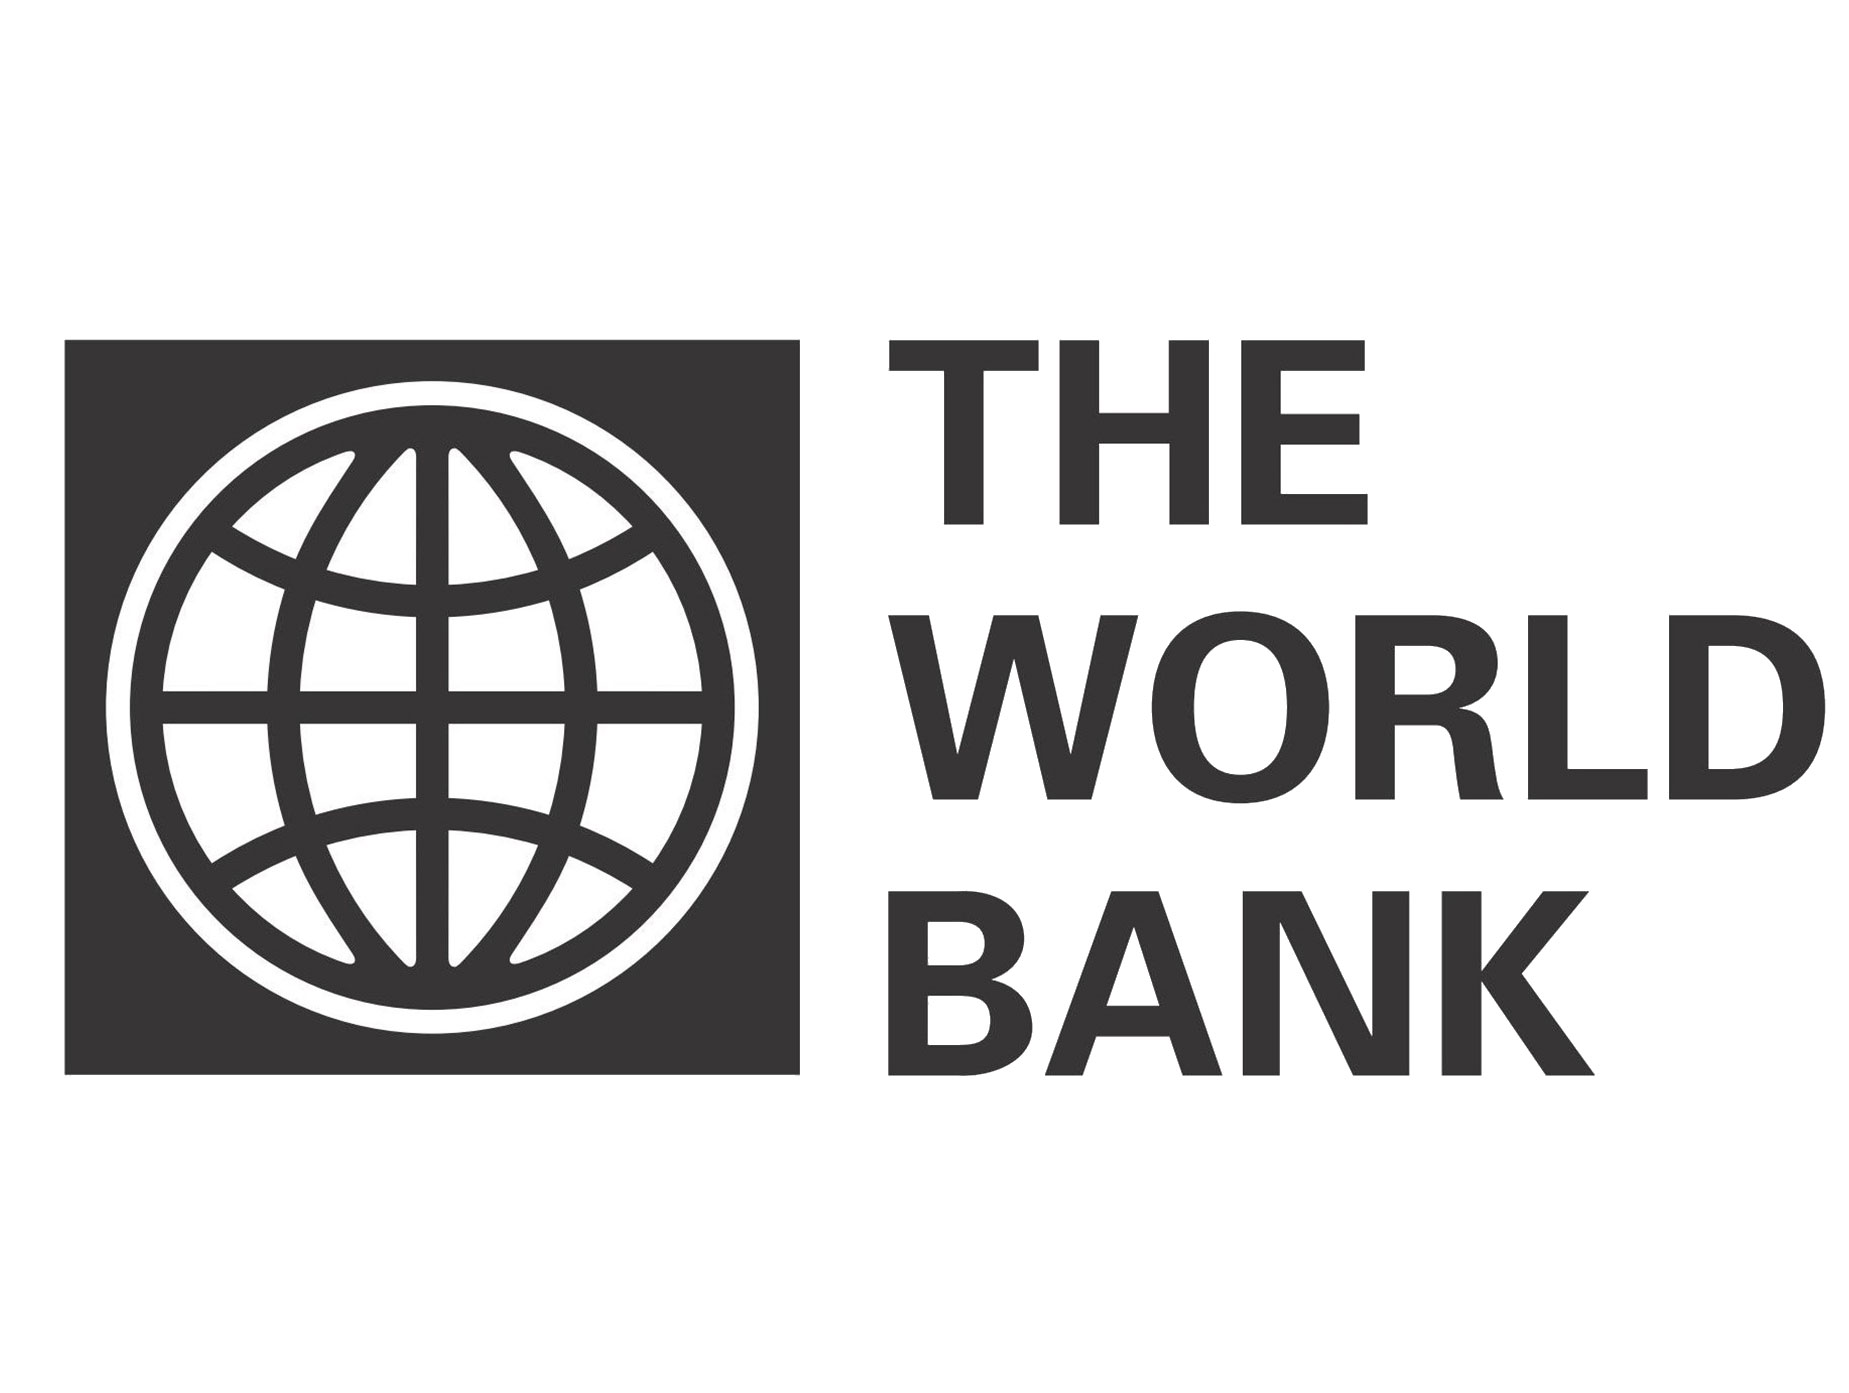 World bank is. Всемирный банк. Группа Всемирного банка логотип. Мировой банк значок. Флаг Всемирного банка.